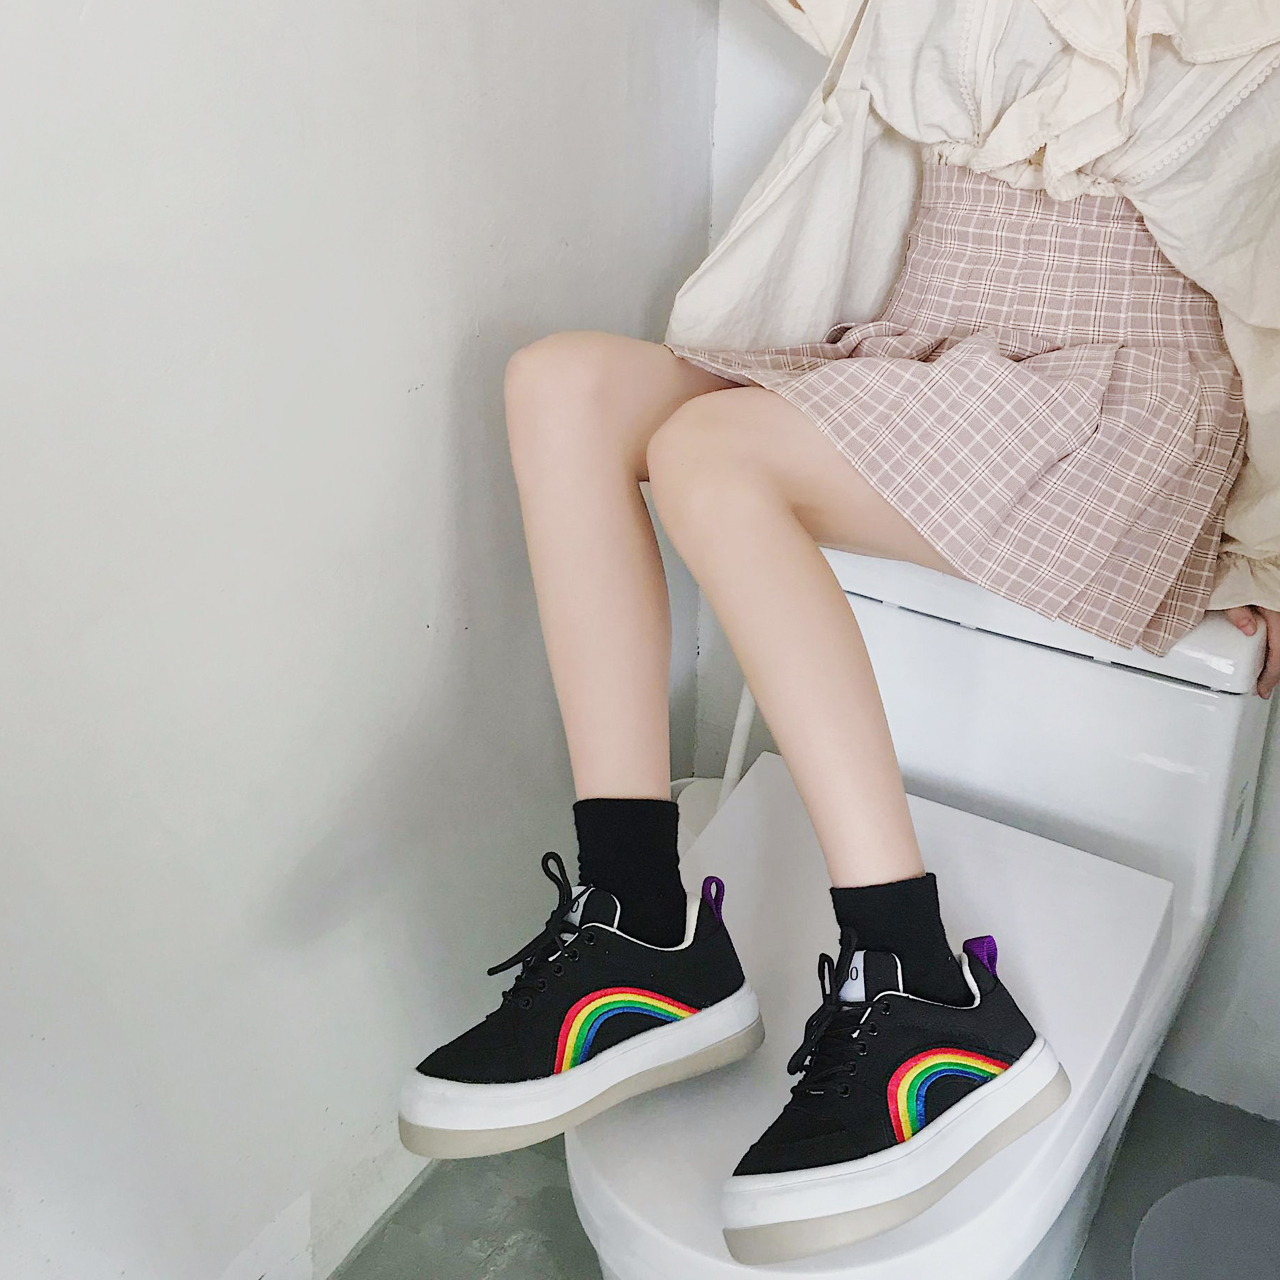 Regit 即納 Rainbow Sneakers 韓国 靴 スニーカー レインボー くつ 履きやすい 10代 代 プチプラ かわいい カジュアル 映える ネット通販 Regit